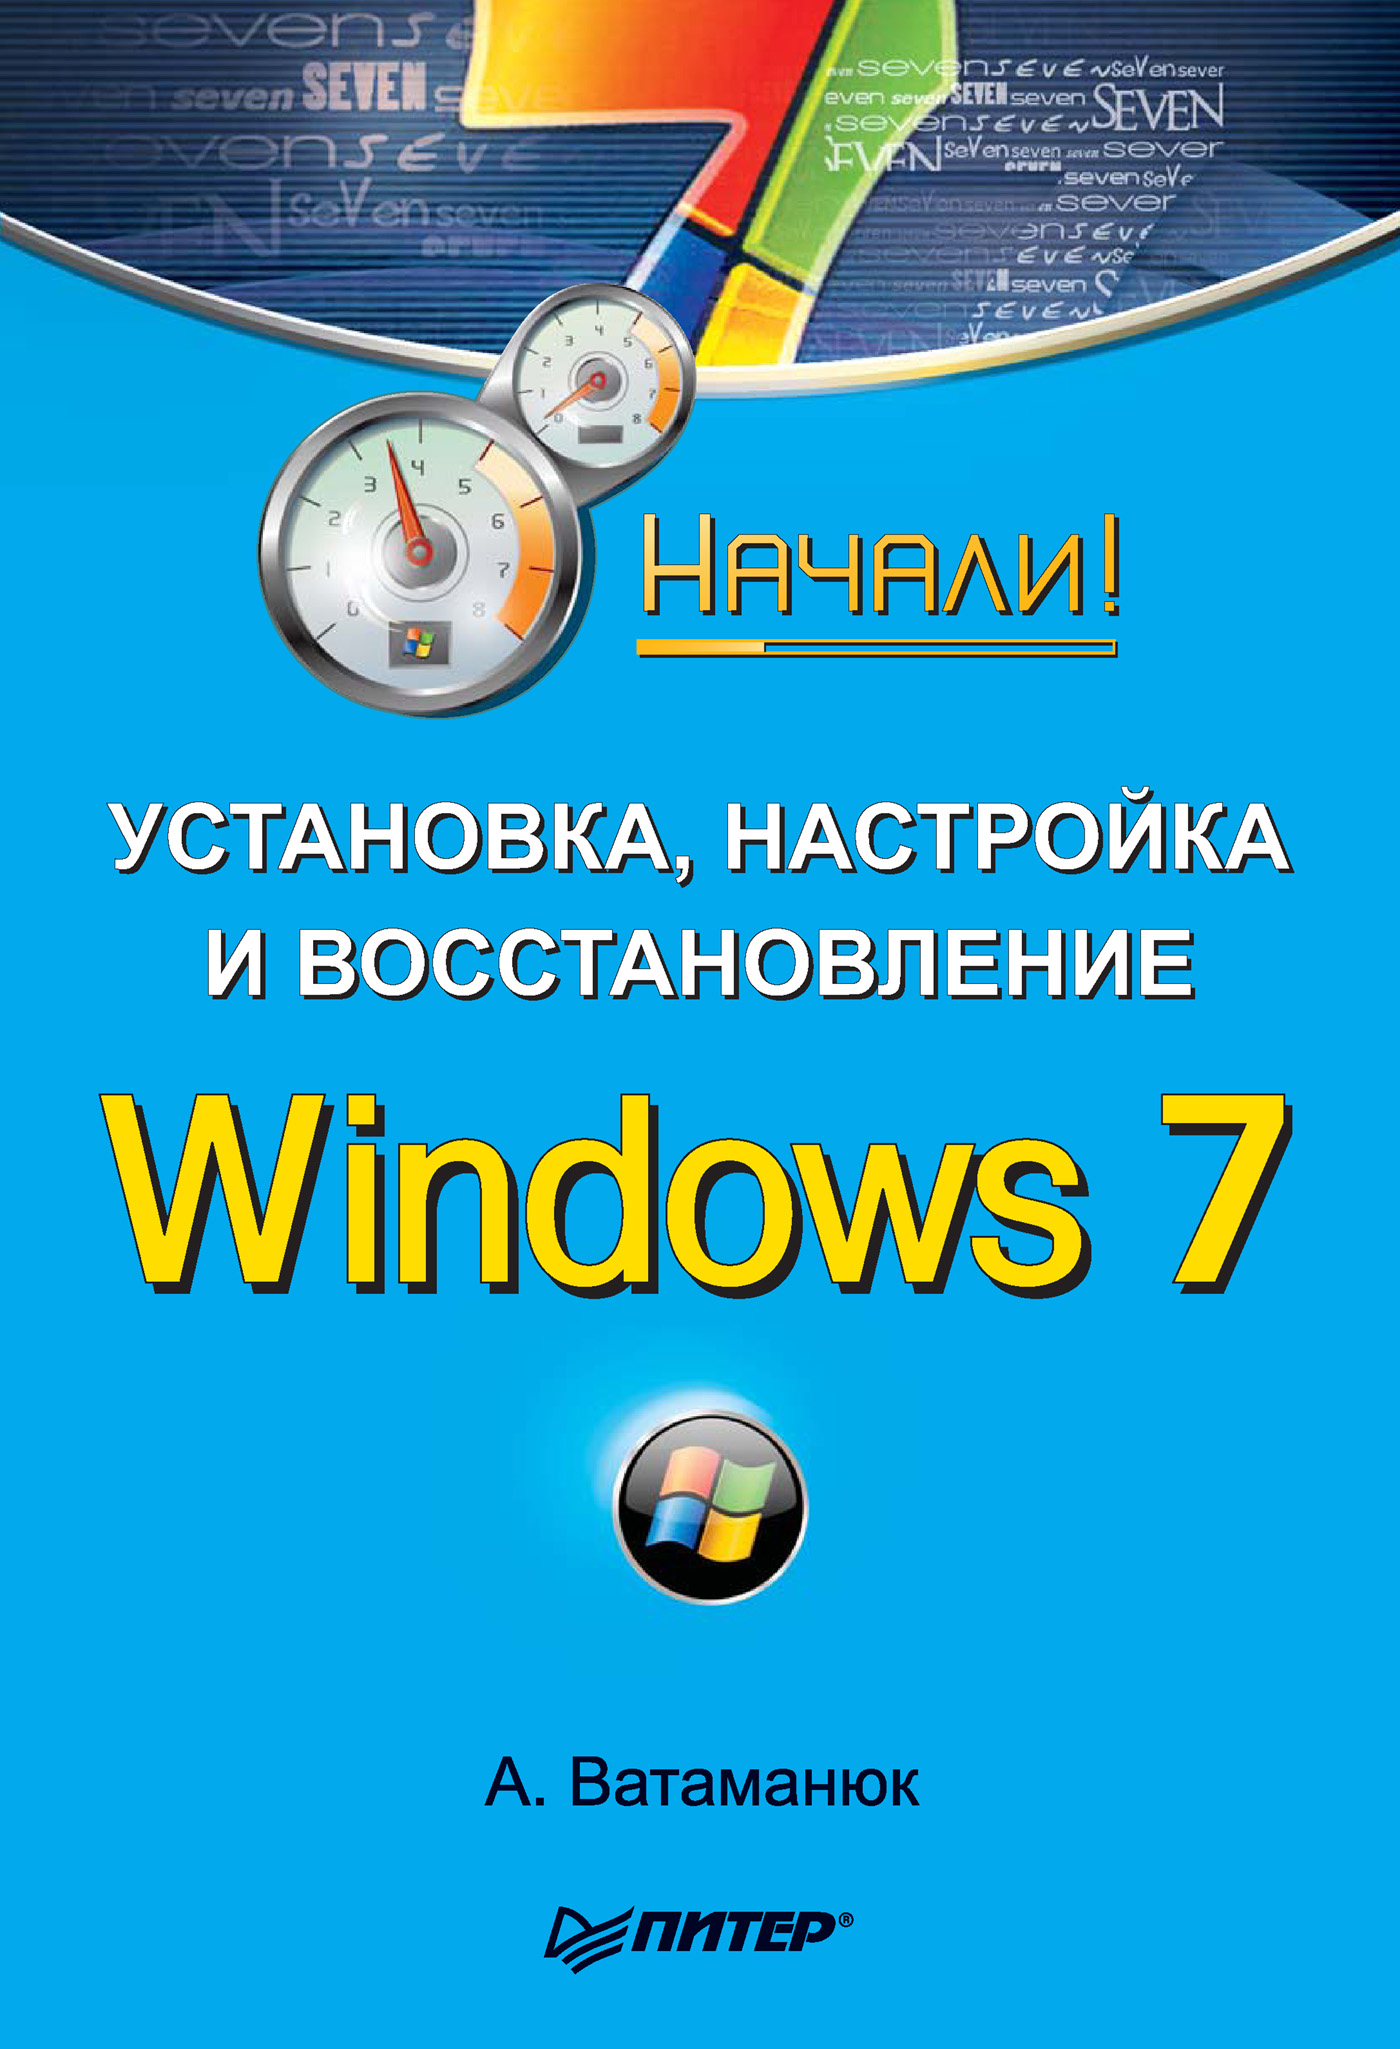 Книга Начали! Установка, настройка и восстановление Windows 7. Начали! созданная Александр Ватаманюк может относится к жанру ОС и сети. Стоимость электронной книги Установка, настройка и восстановление Windows 7. Начали! с идентификатором 430182 составляет 59.00 руб.